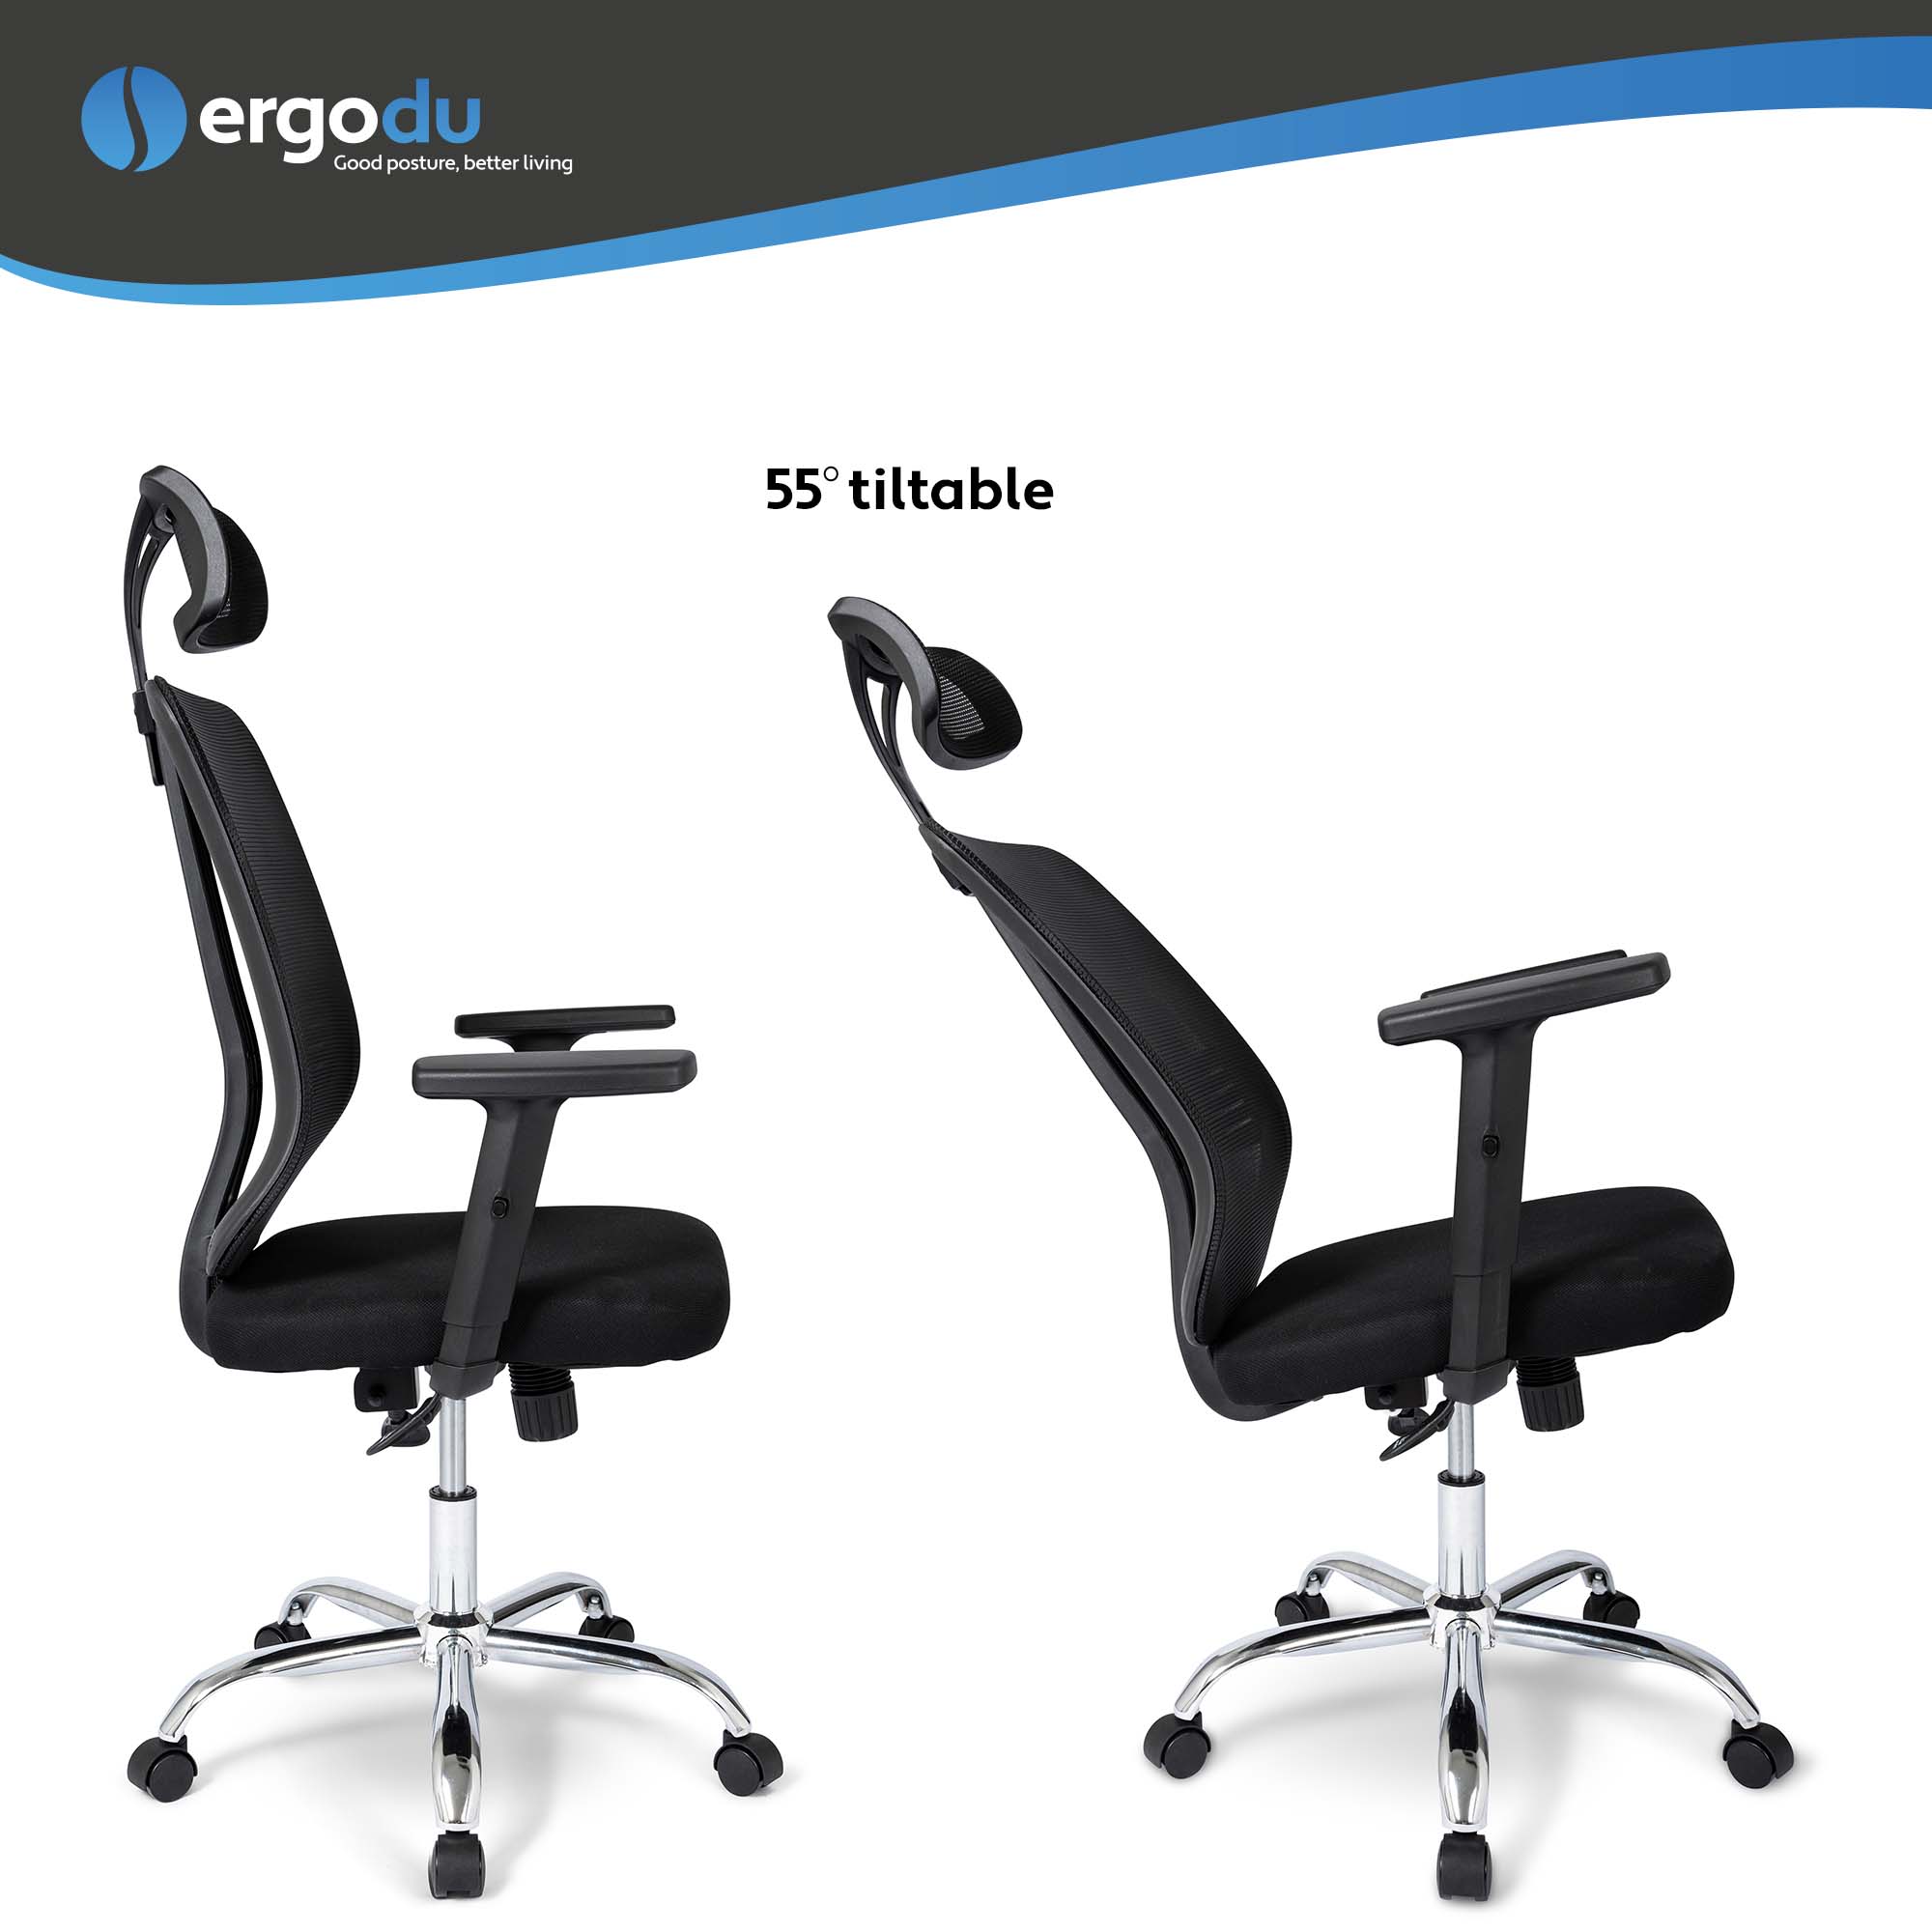 Ergodu Office Chair with Adjustable Armrests tiltable backrest